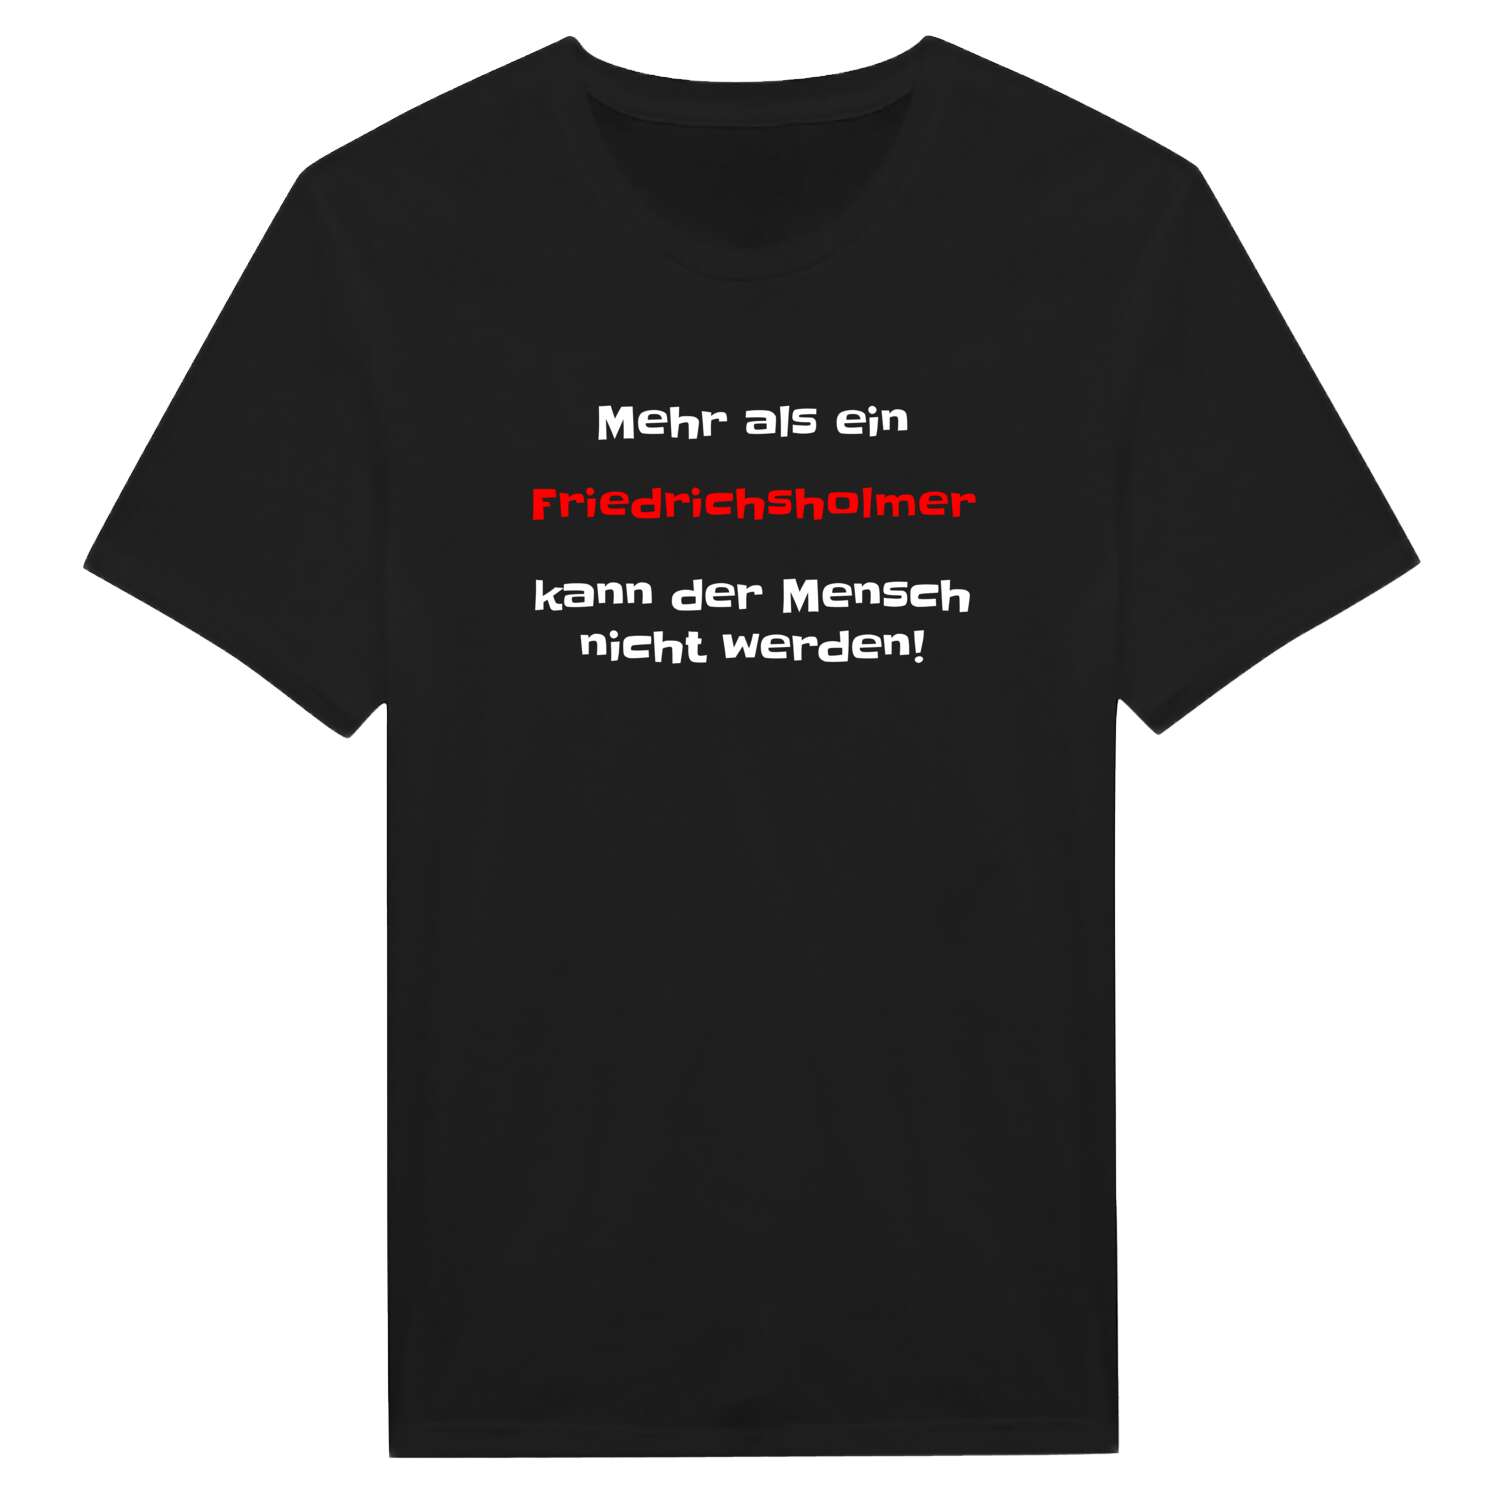 Friedrichsholm T-Shirt »Mehr als ein«